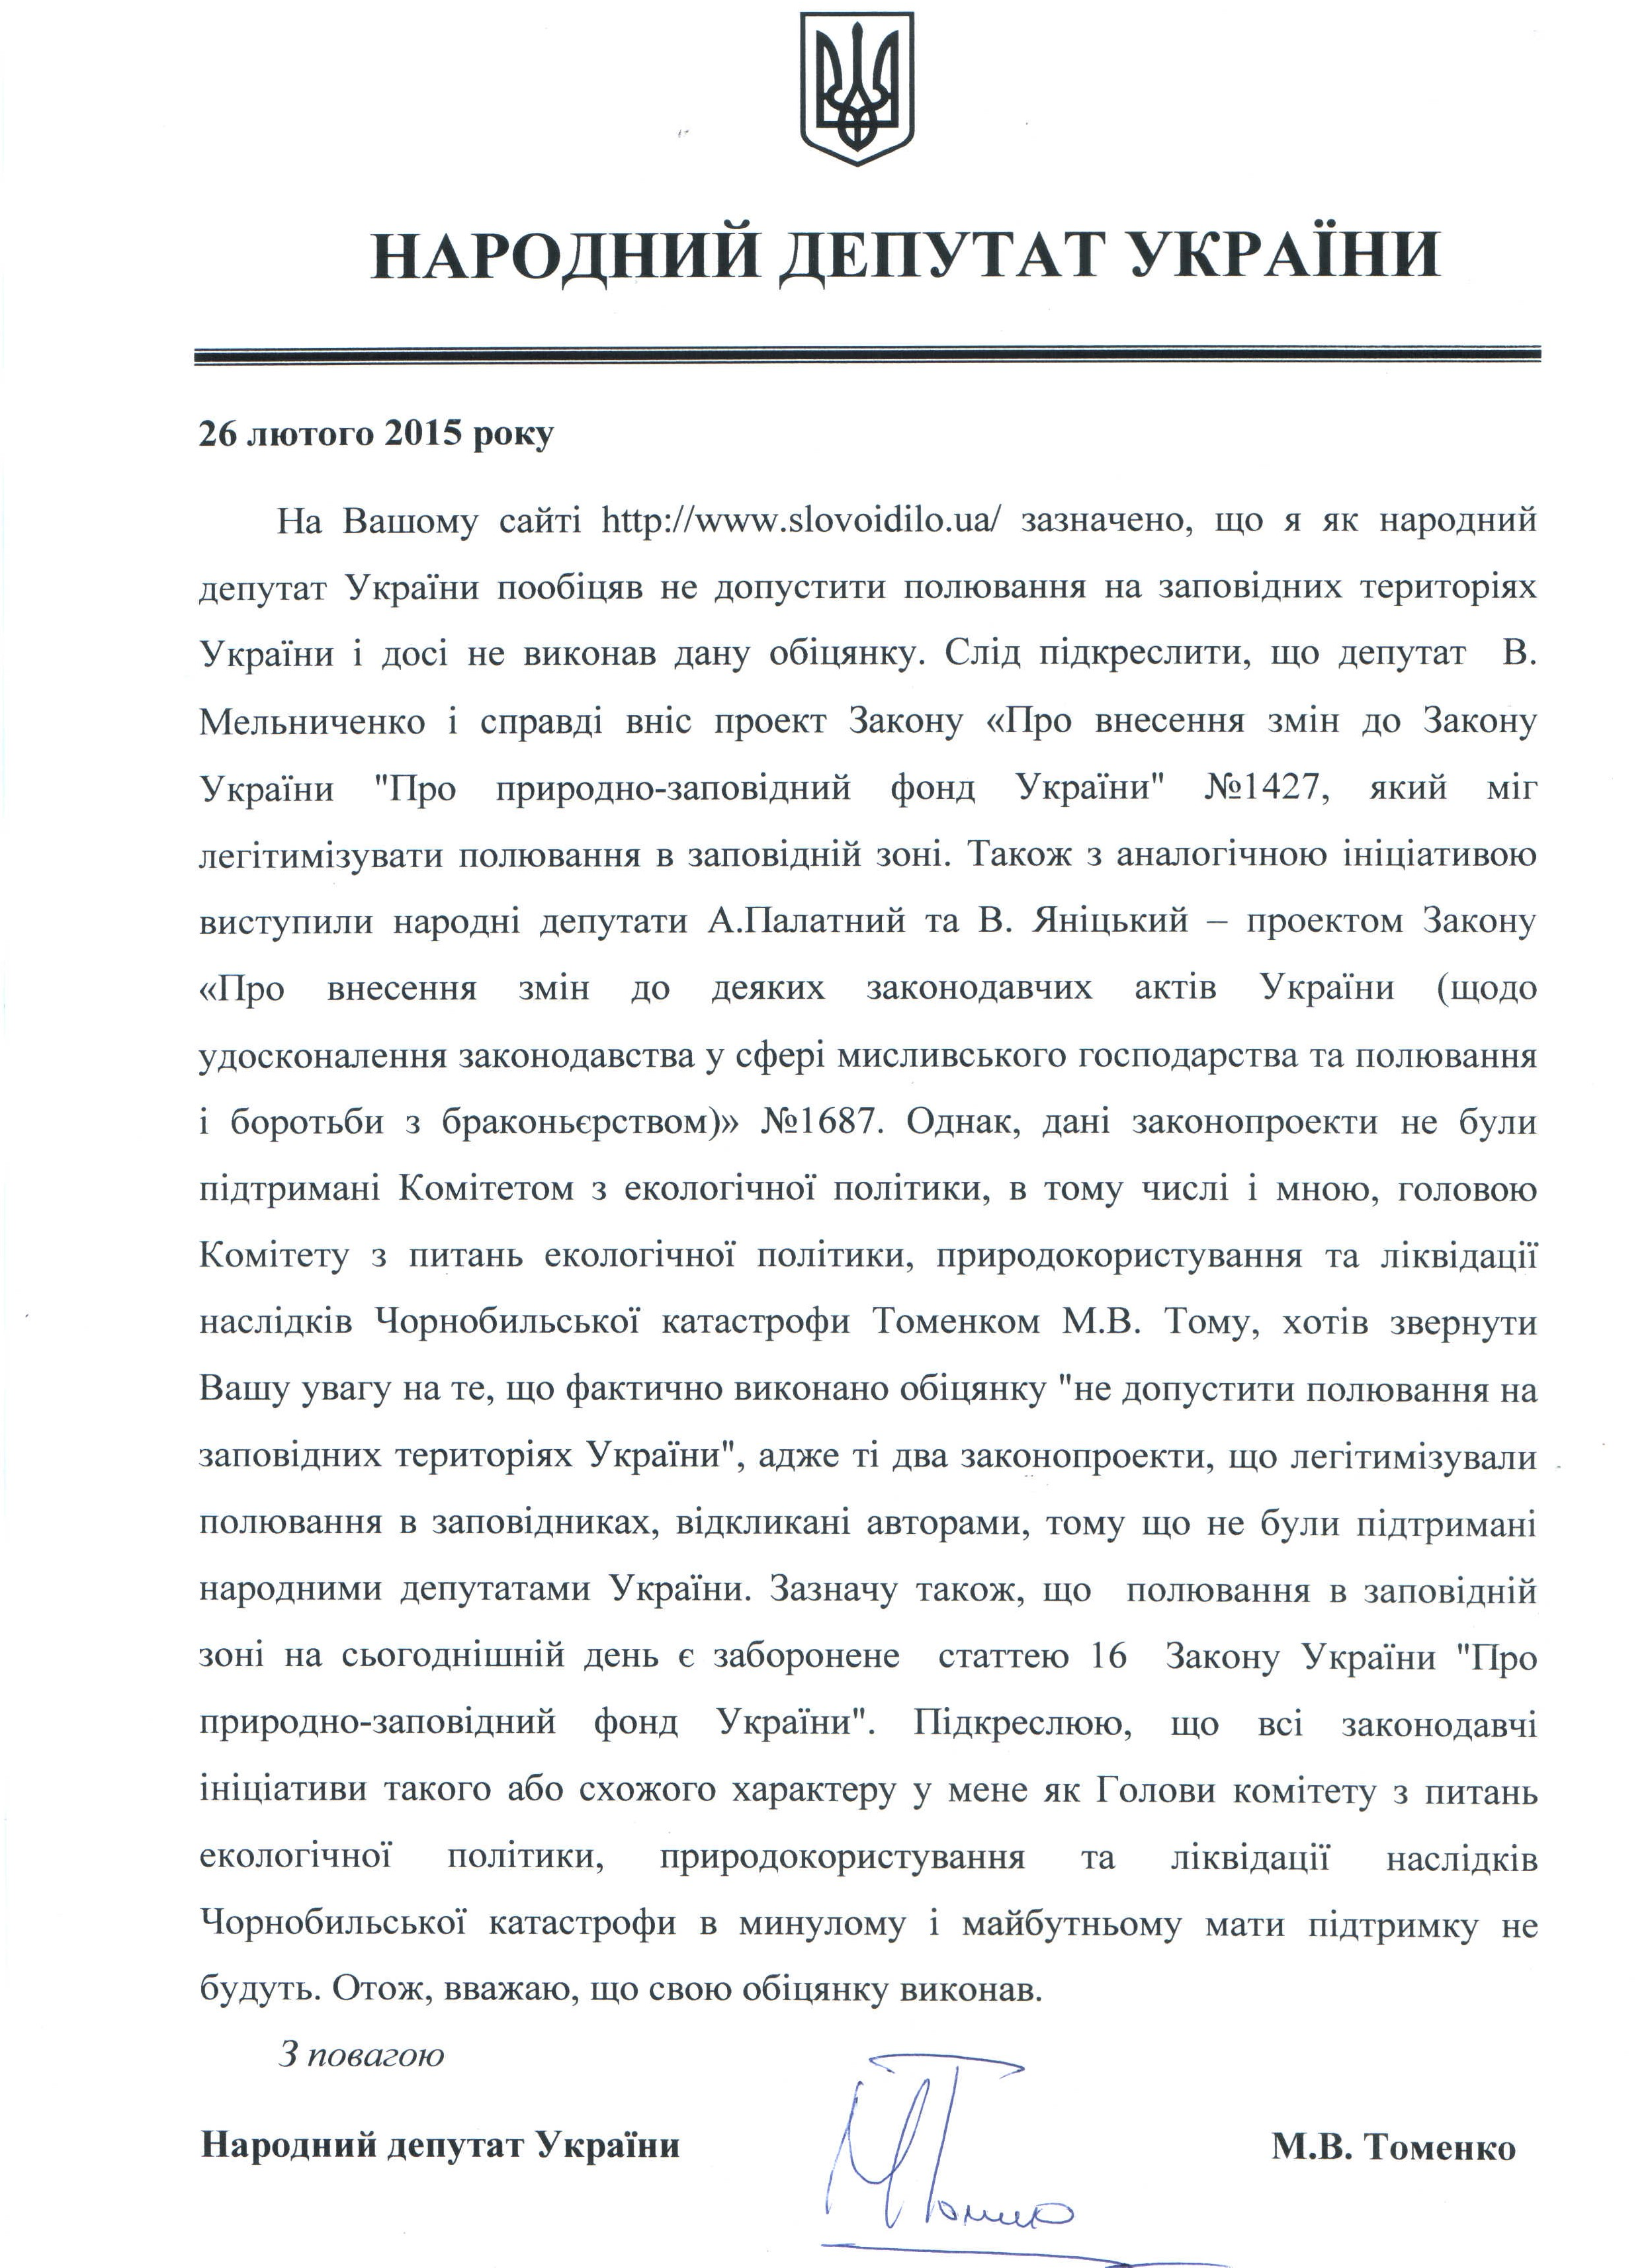 Лист народного депутата України М.Томенко від 26.02.2015